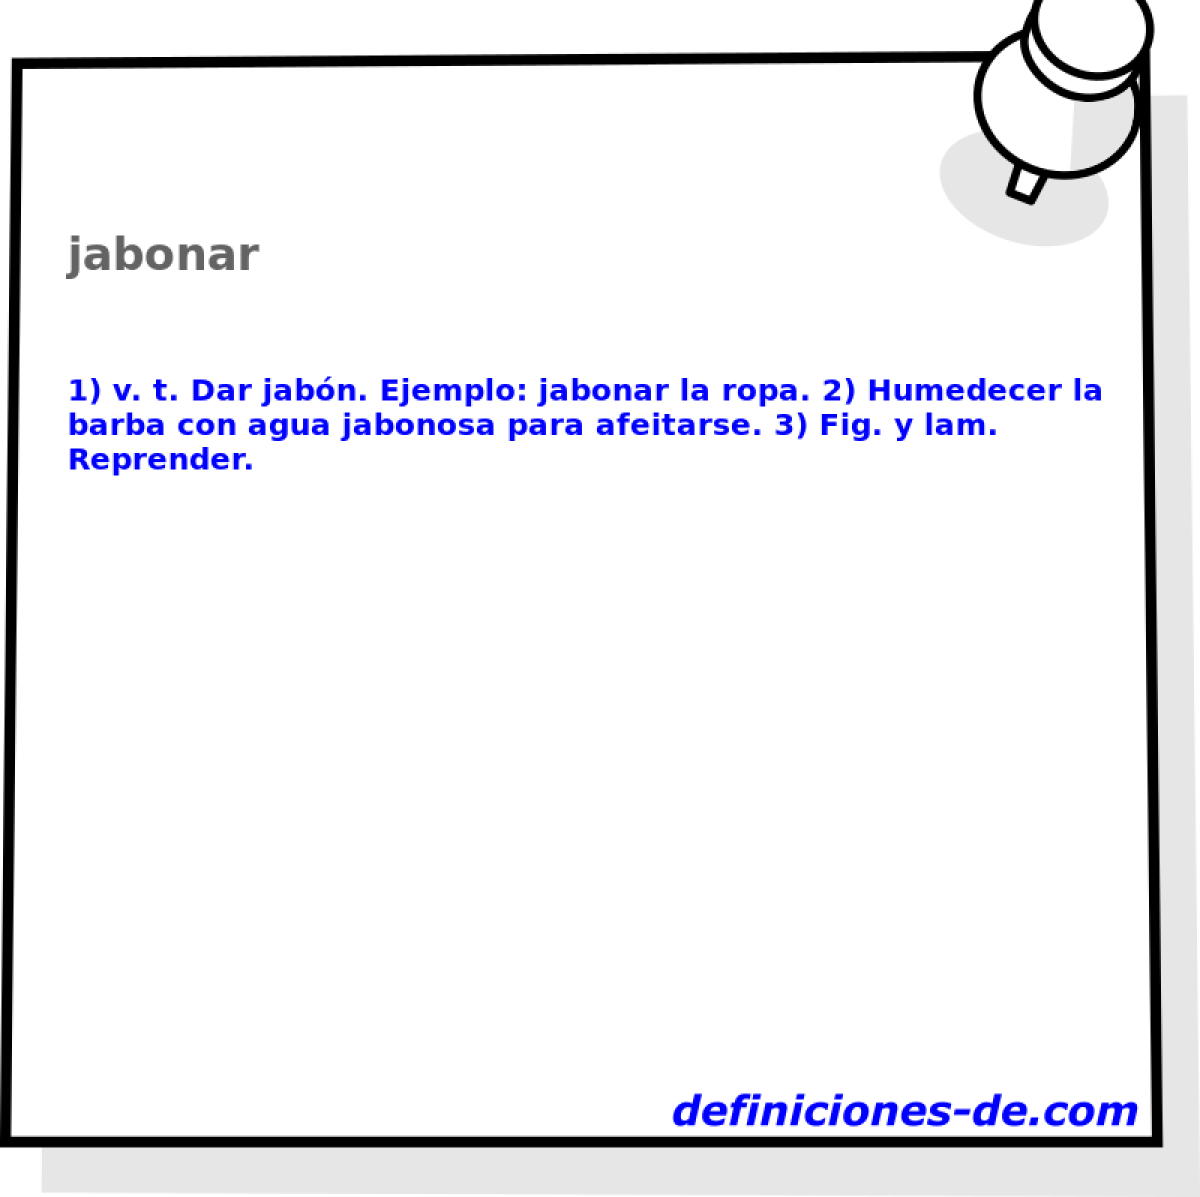 jabonar 